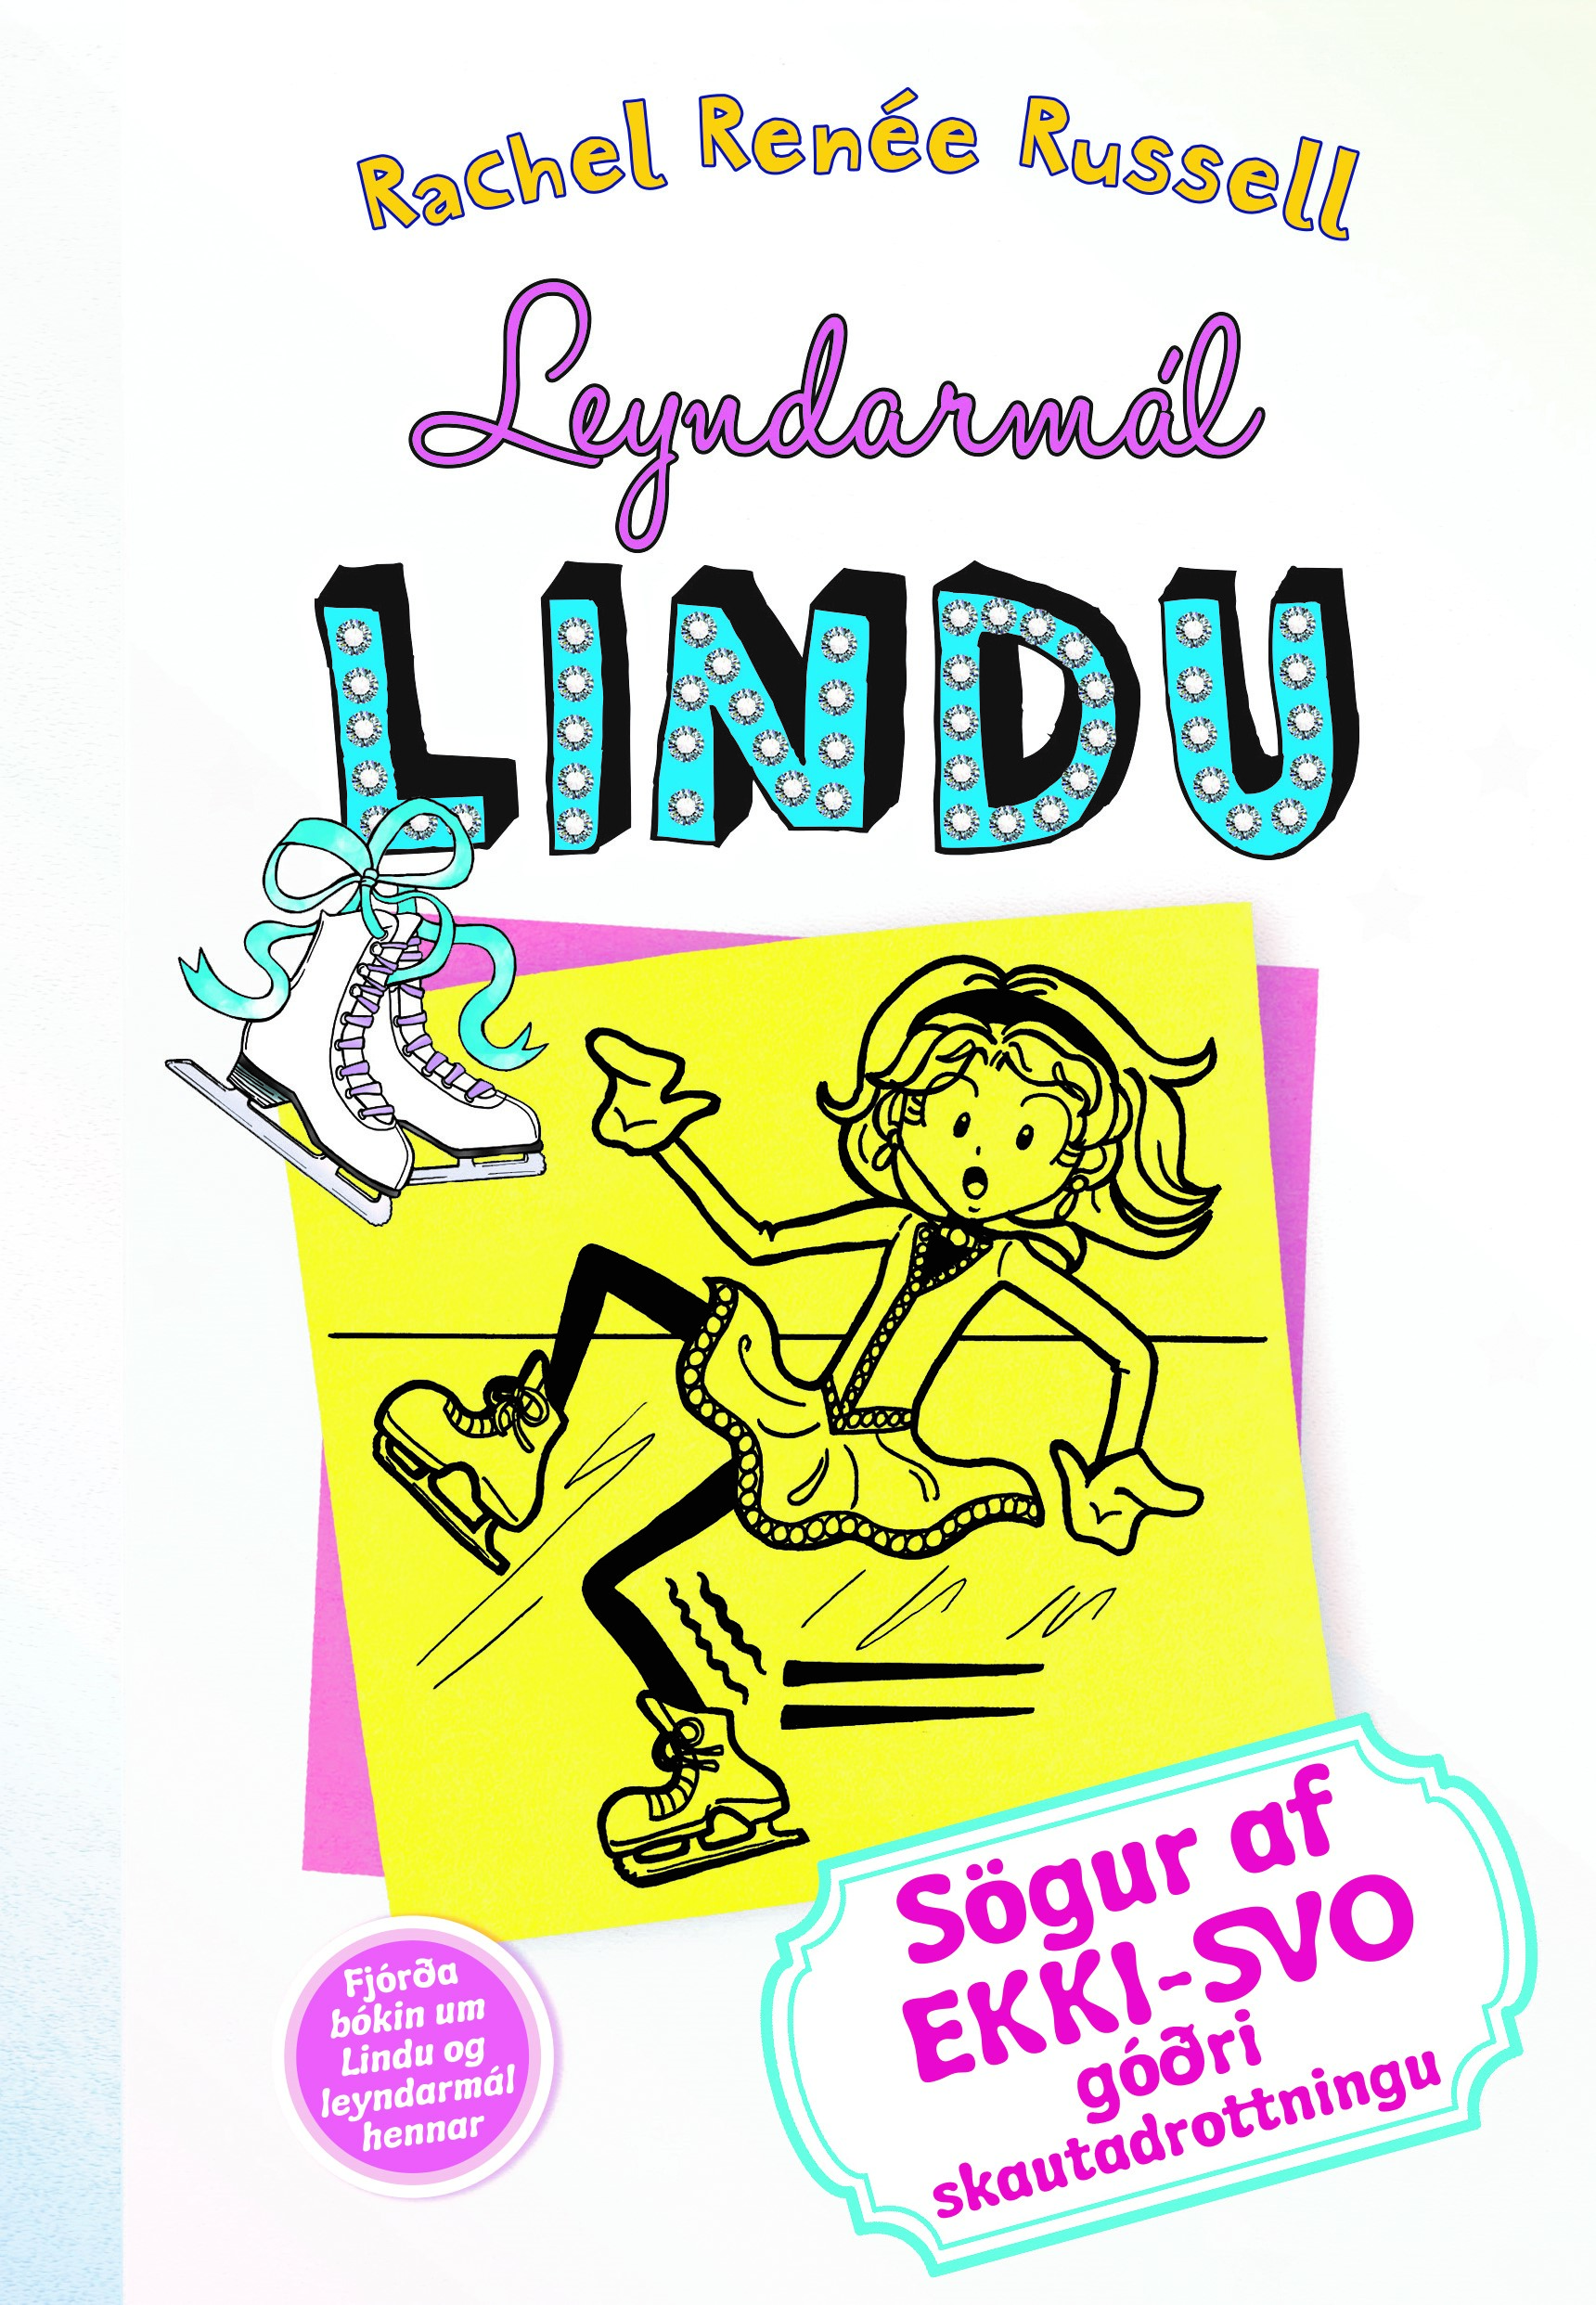 Leyndarmál Lindu 4 - sögur af ekki-svo góðri skautadrottningu